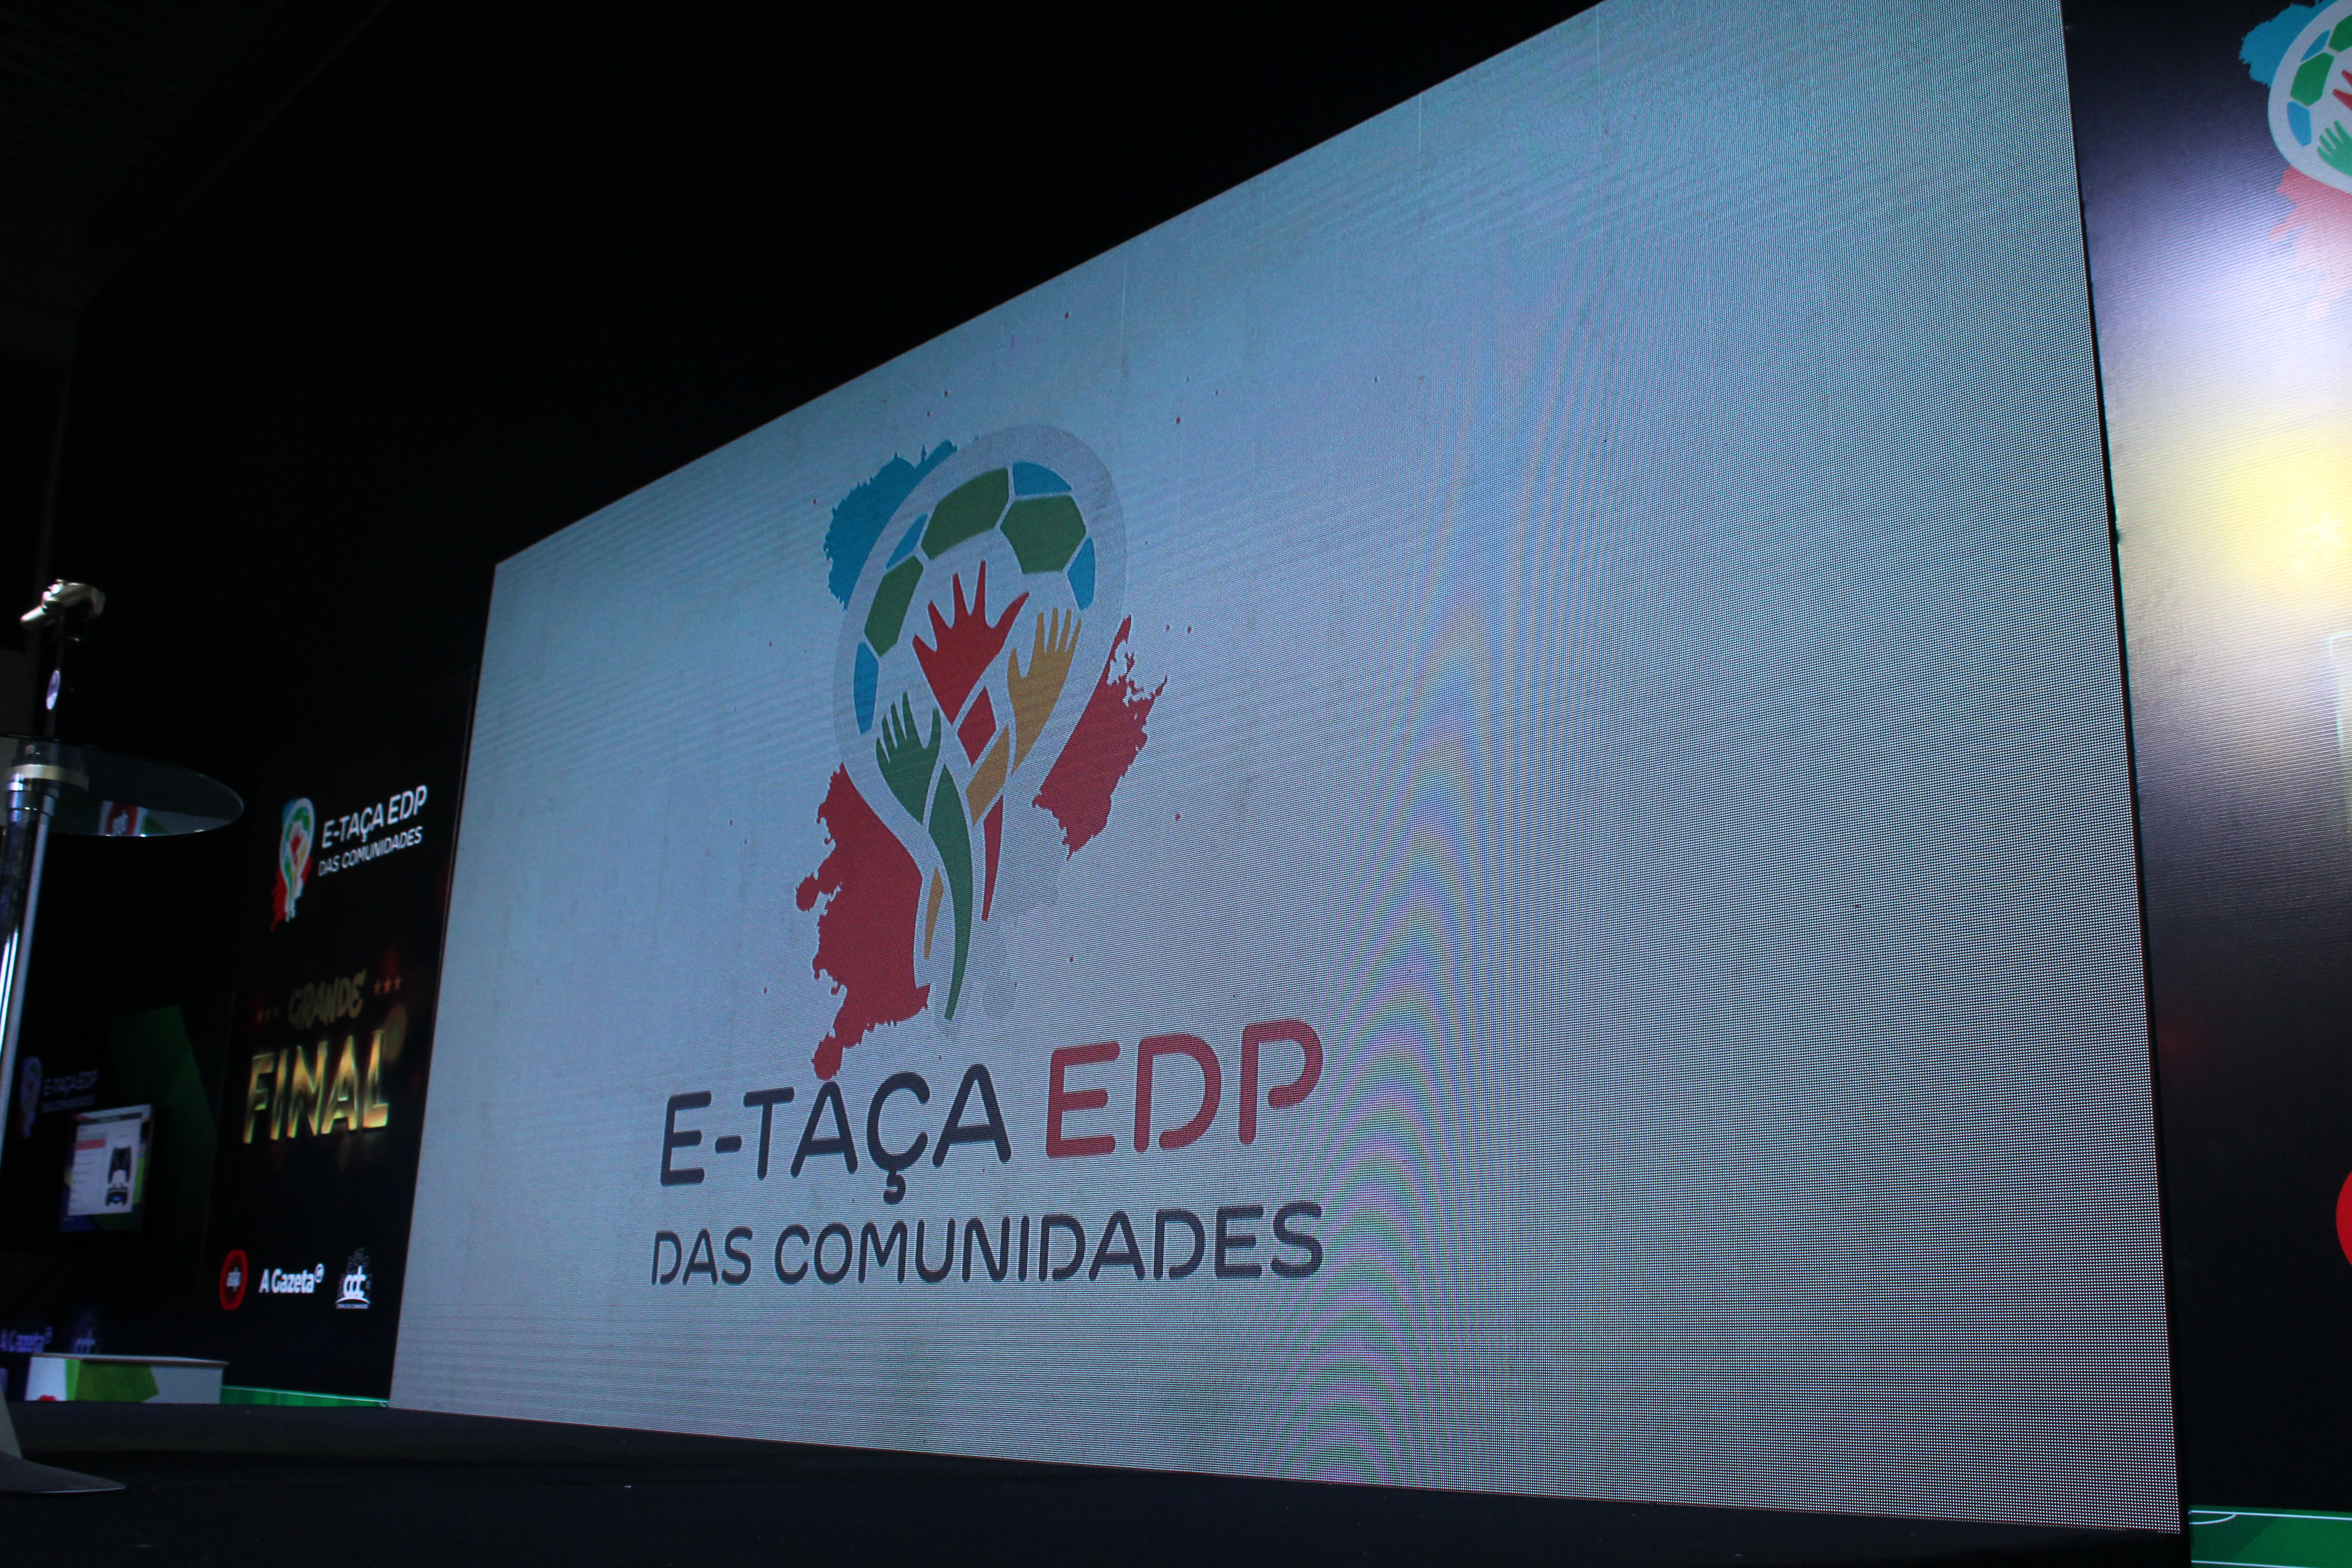 Final da E-Taça EDP das Comunidades acontece neste domingo (13)